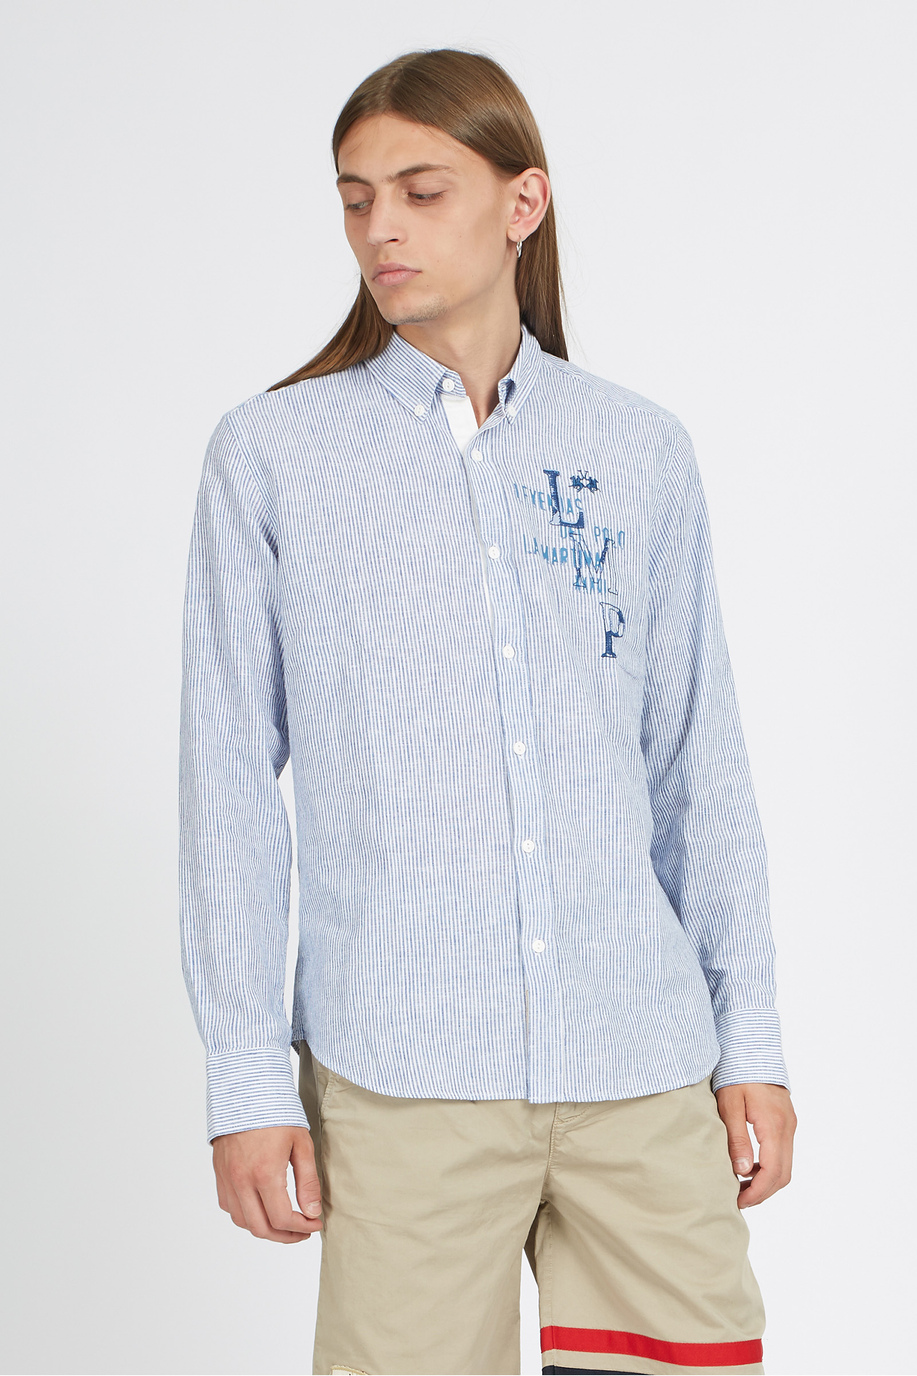 Men's long-sleeved shirt in regular fit linen-cotton blend - Vinh - Gift ideas for him | La Martina - Official Online Shop